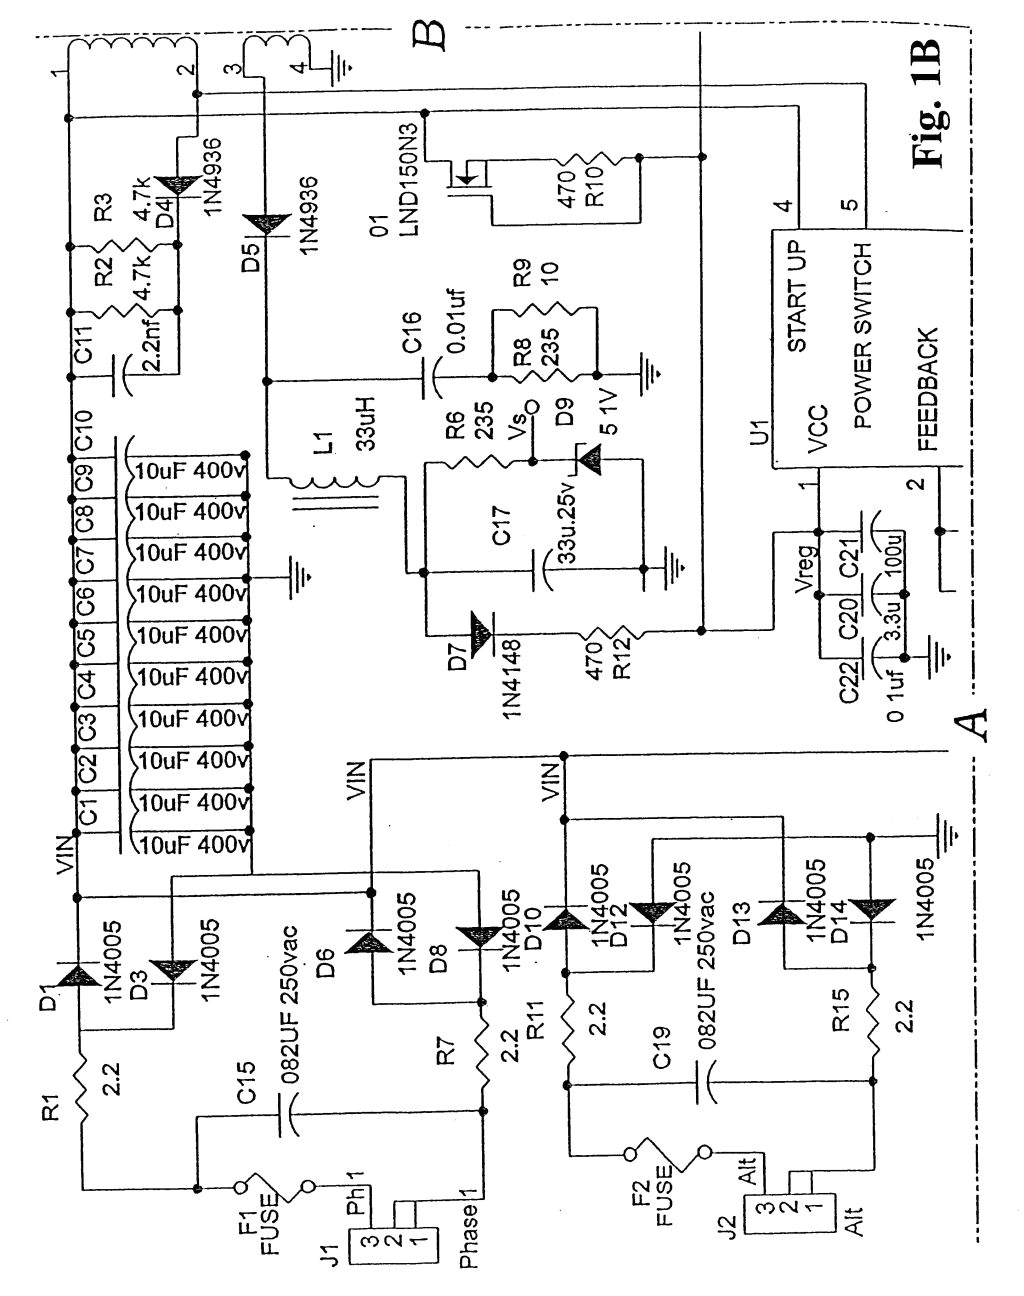 elevator wiring diagram wiring diagram today otis wiring diagram